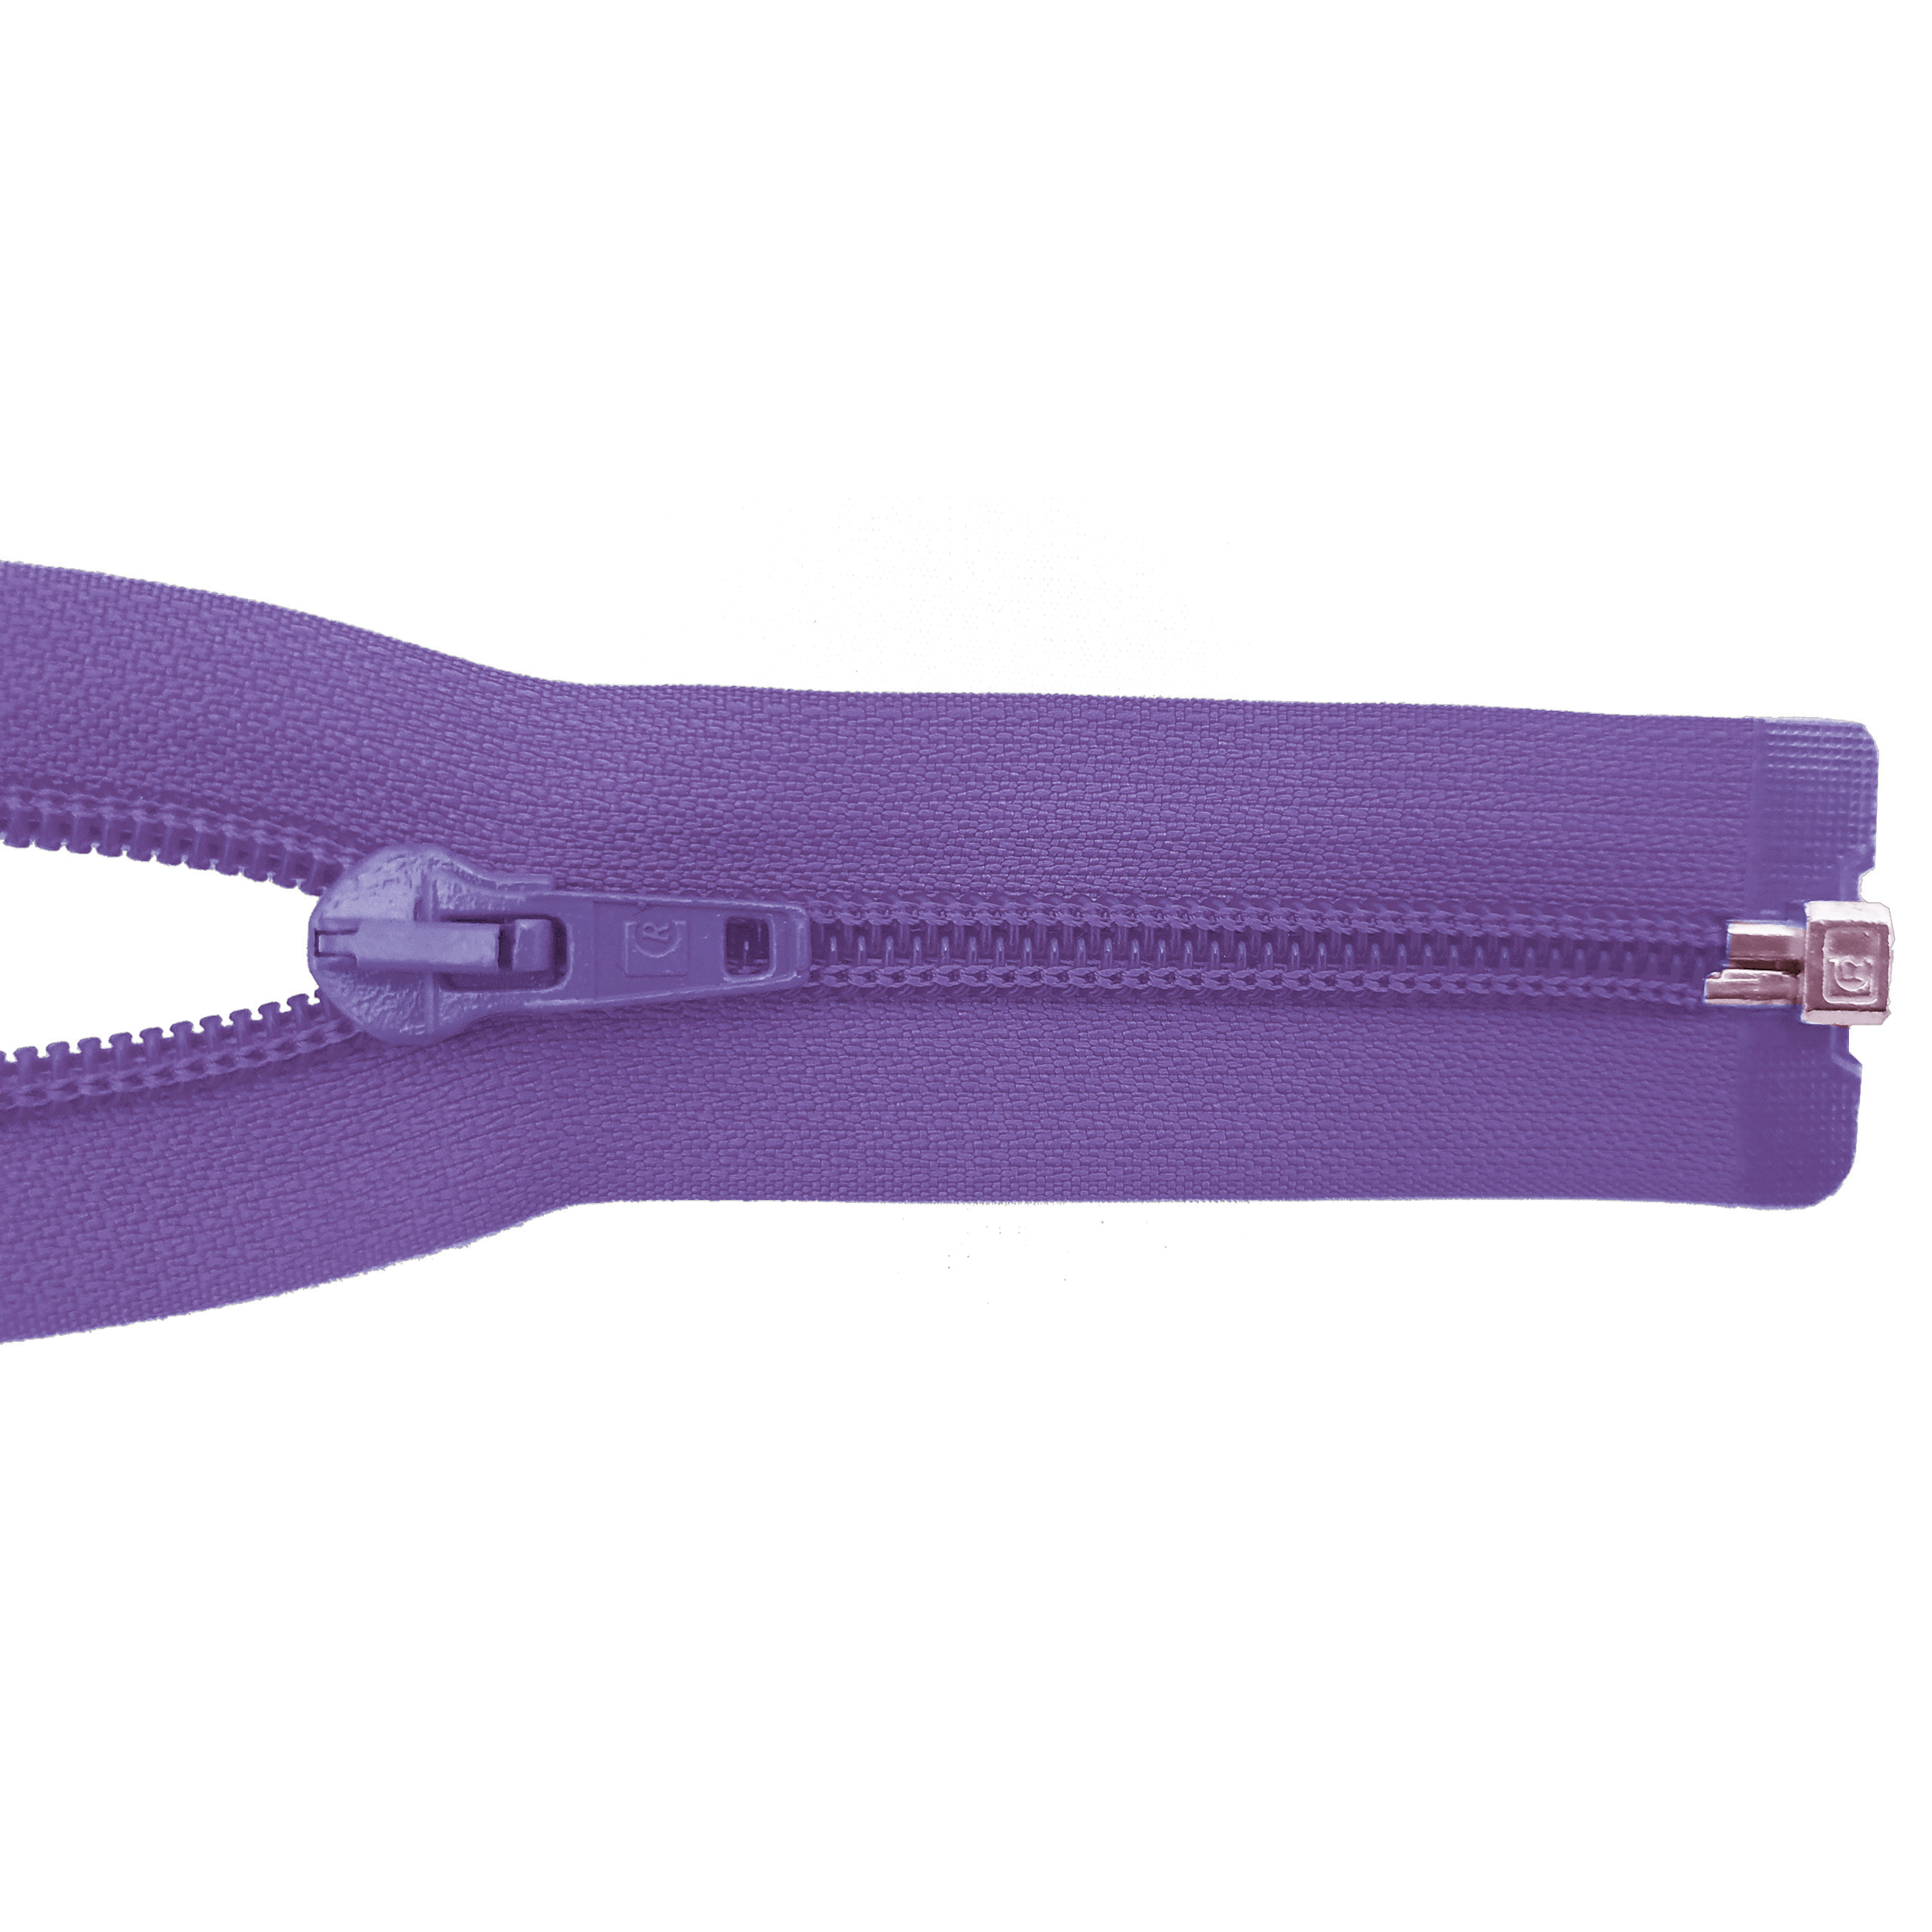 zipper 100cm,divisible, PES spiral, wide, blue purple